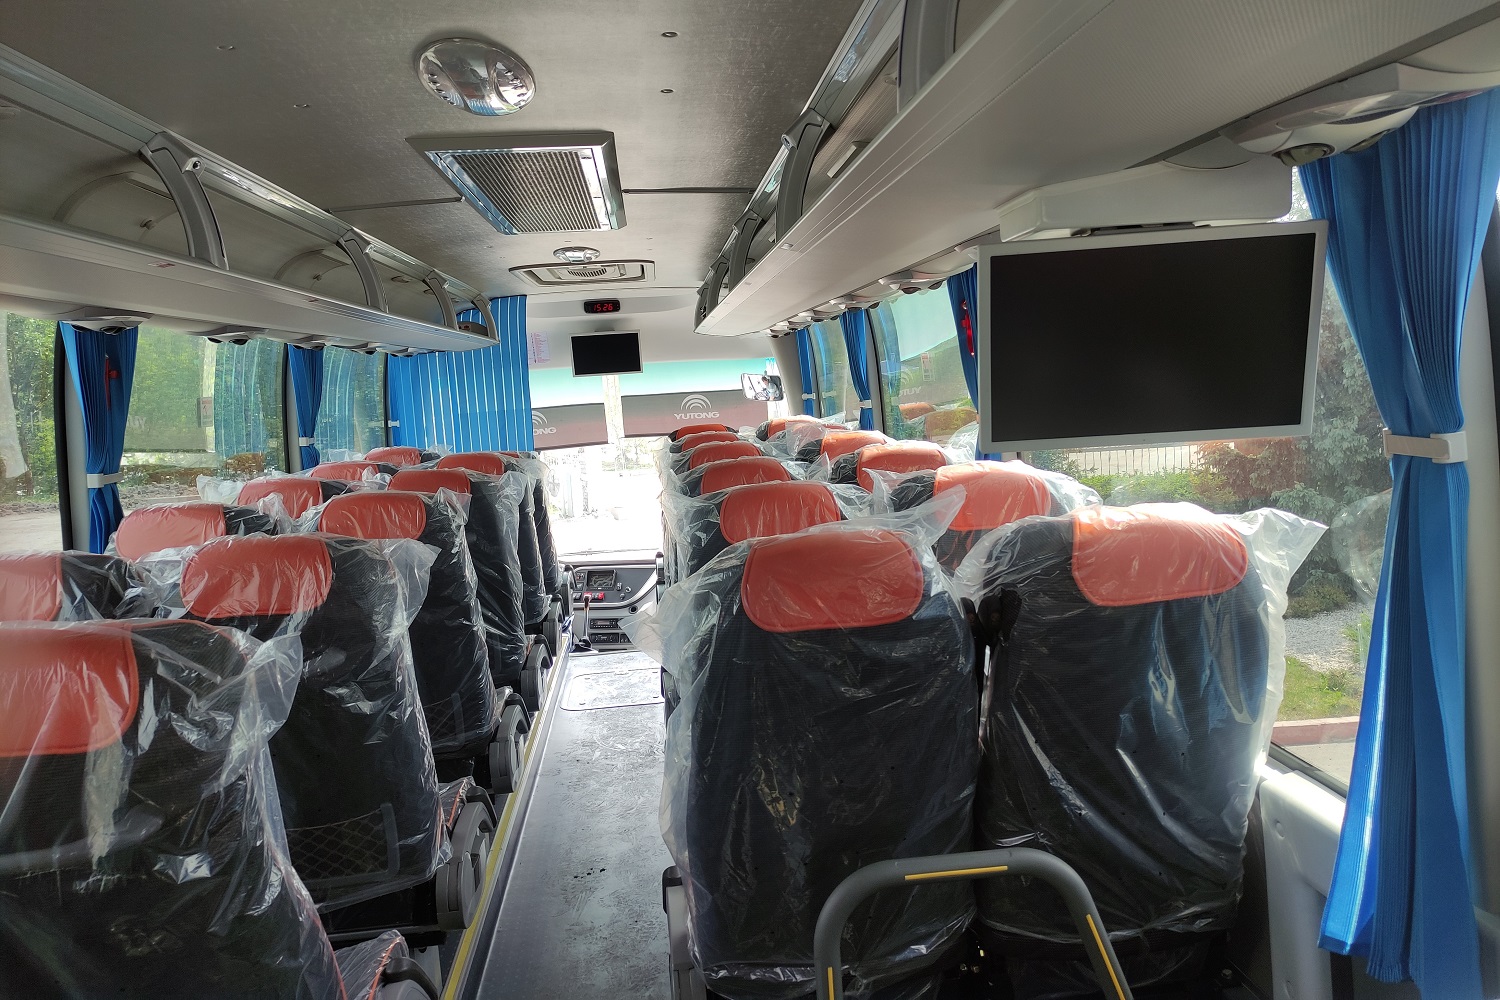 Еще 2 новых автобуса производства КНР поступили на разрезы компании. Стройсервис